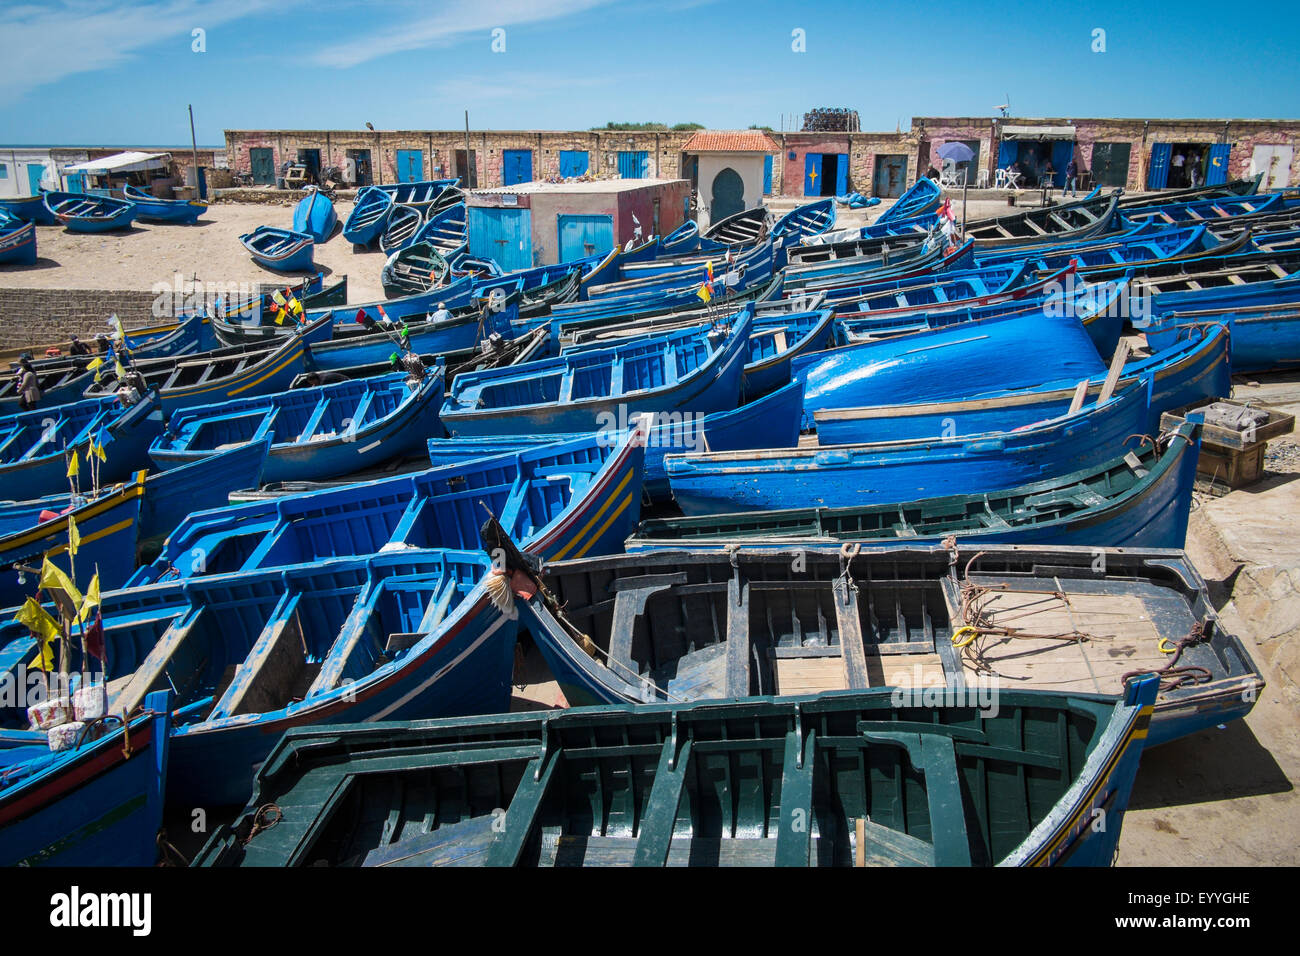 Large group of blue rowboats Stock Photo